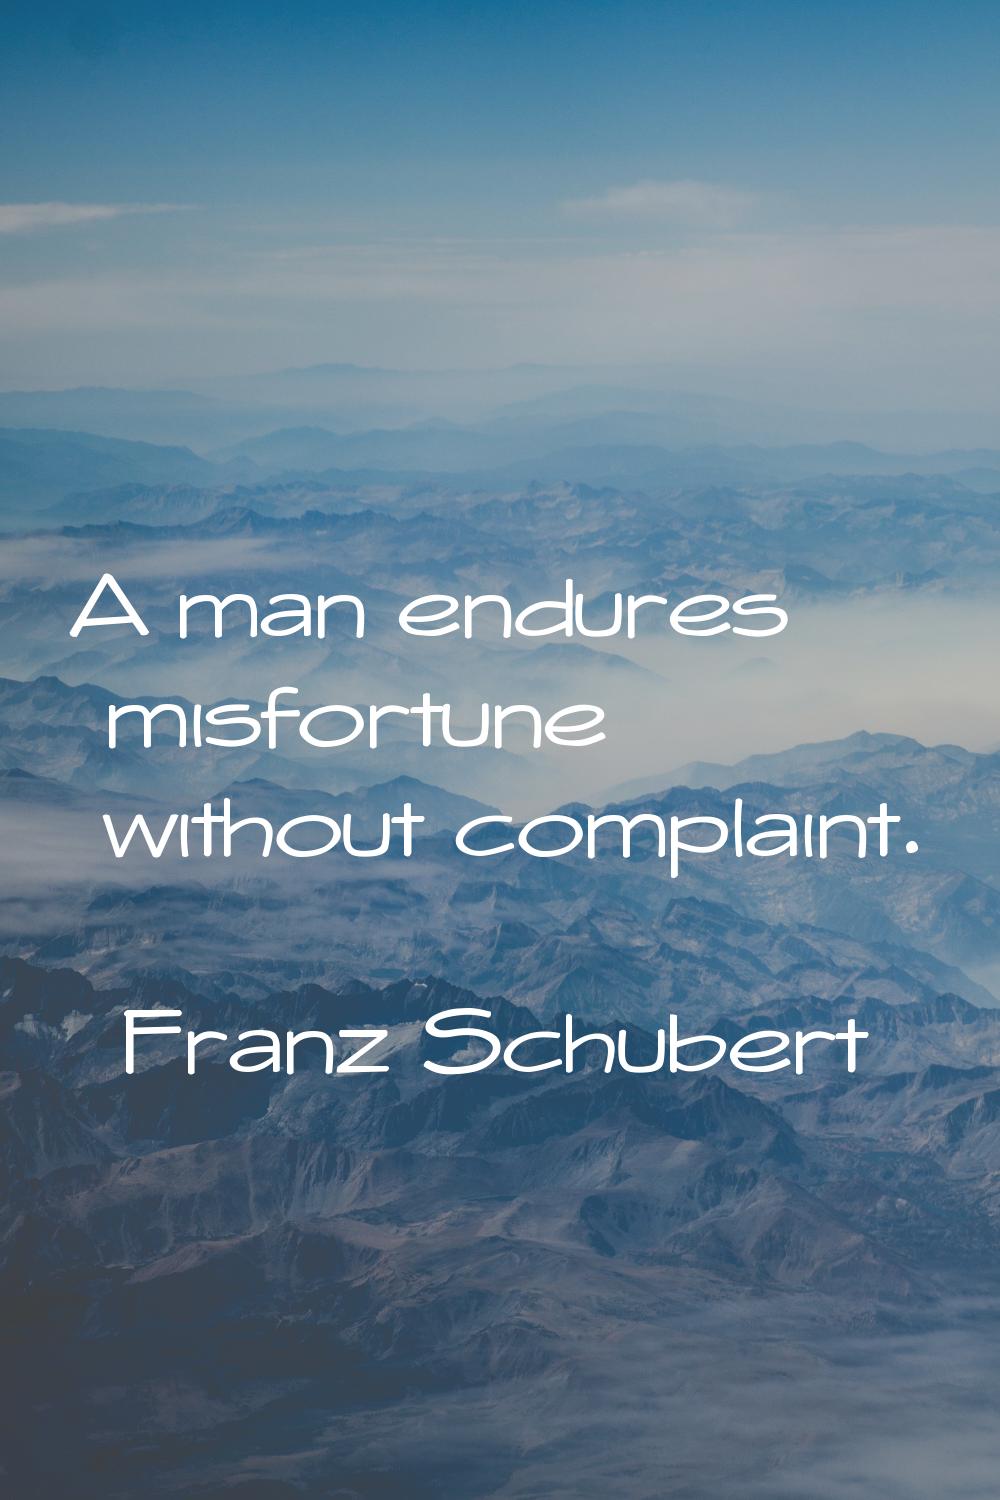 A man endures misfortune without complaint.